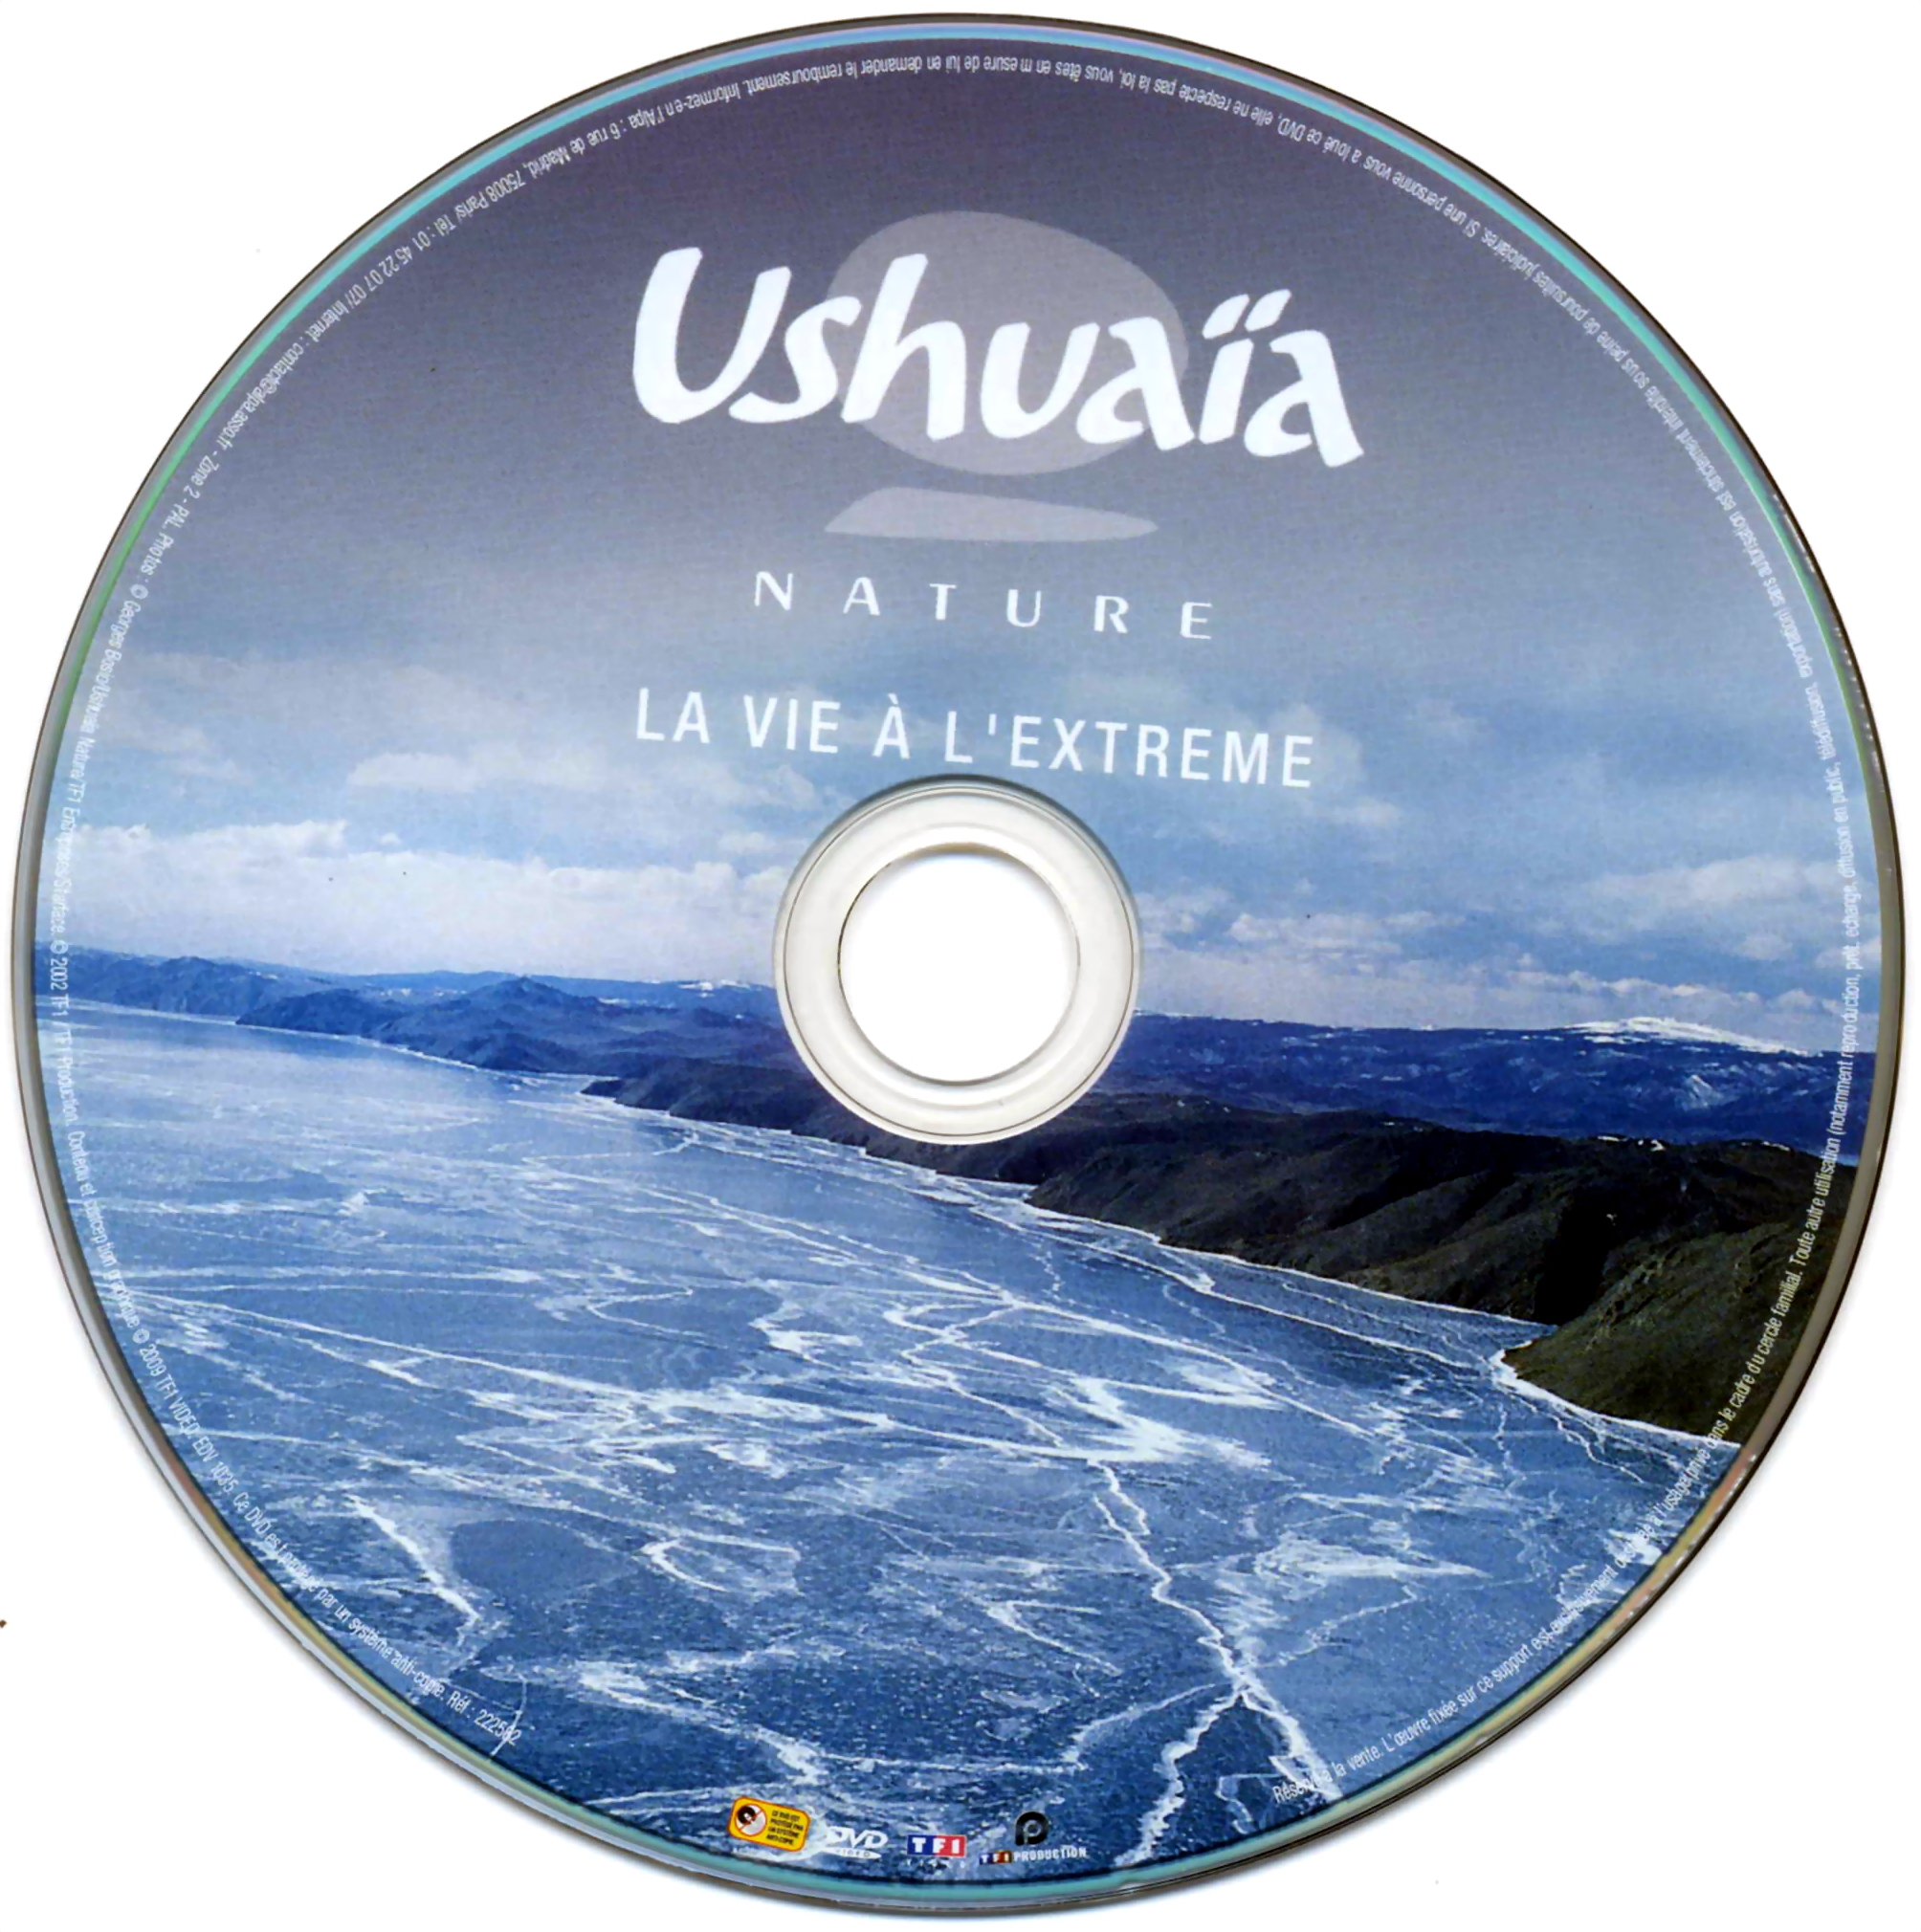 Ushuaia Nature - La vie  l